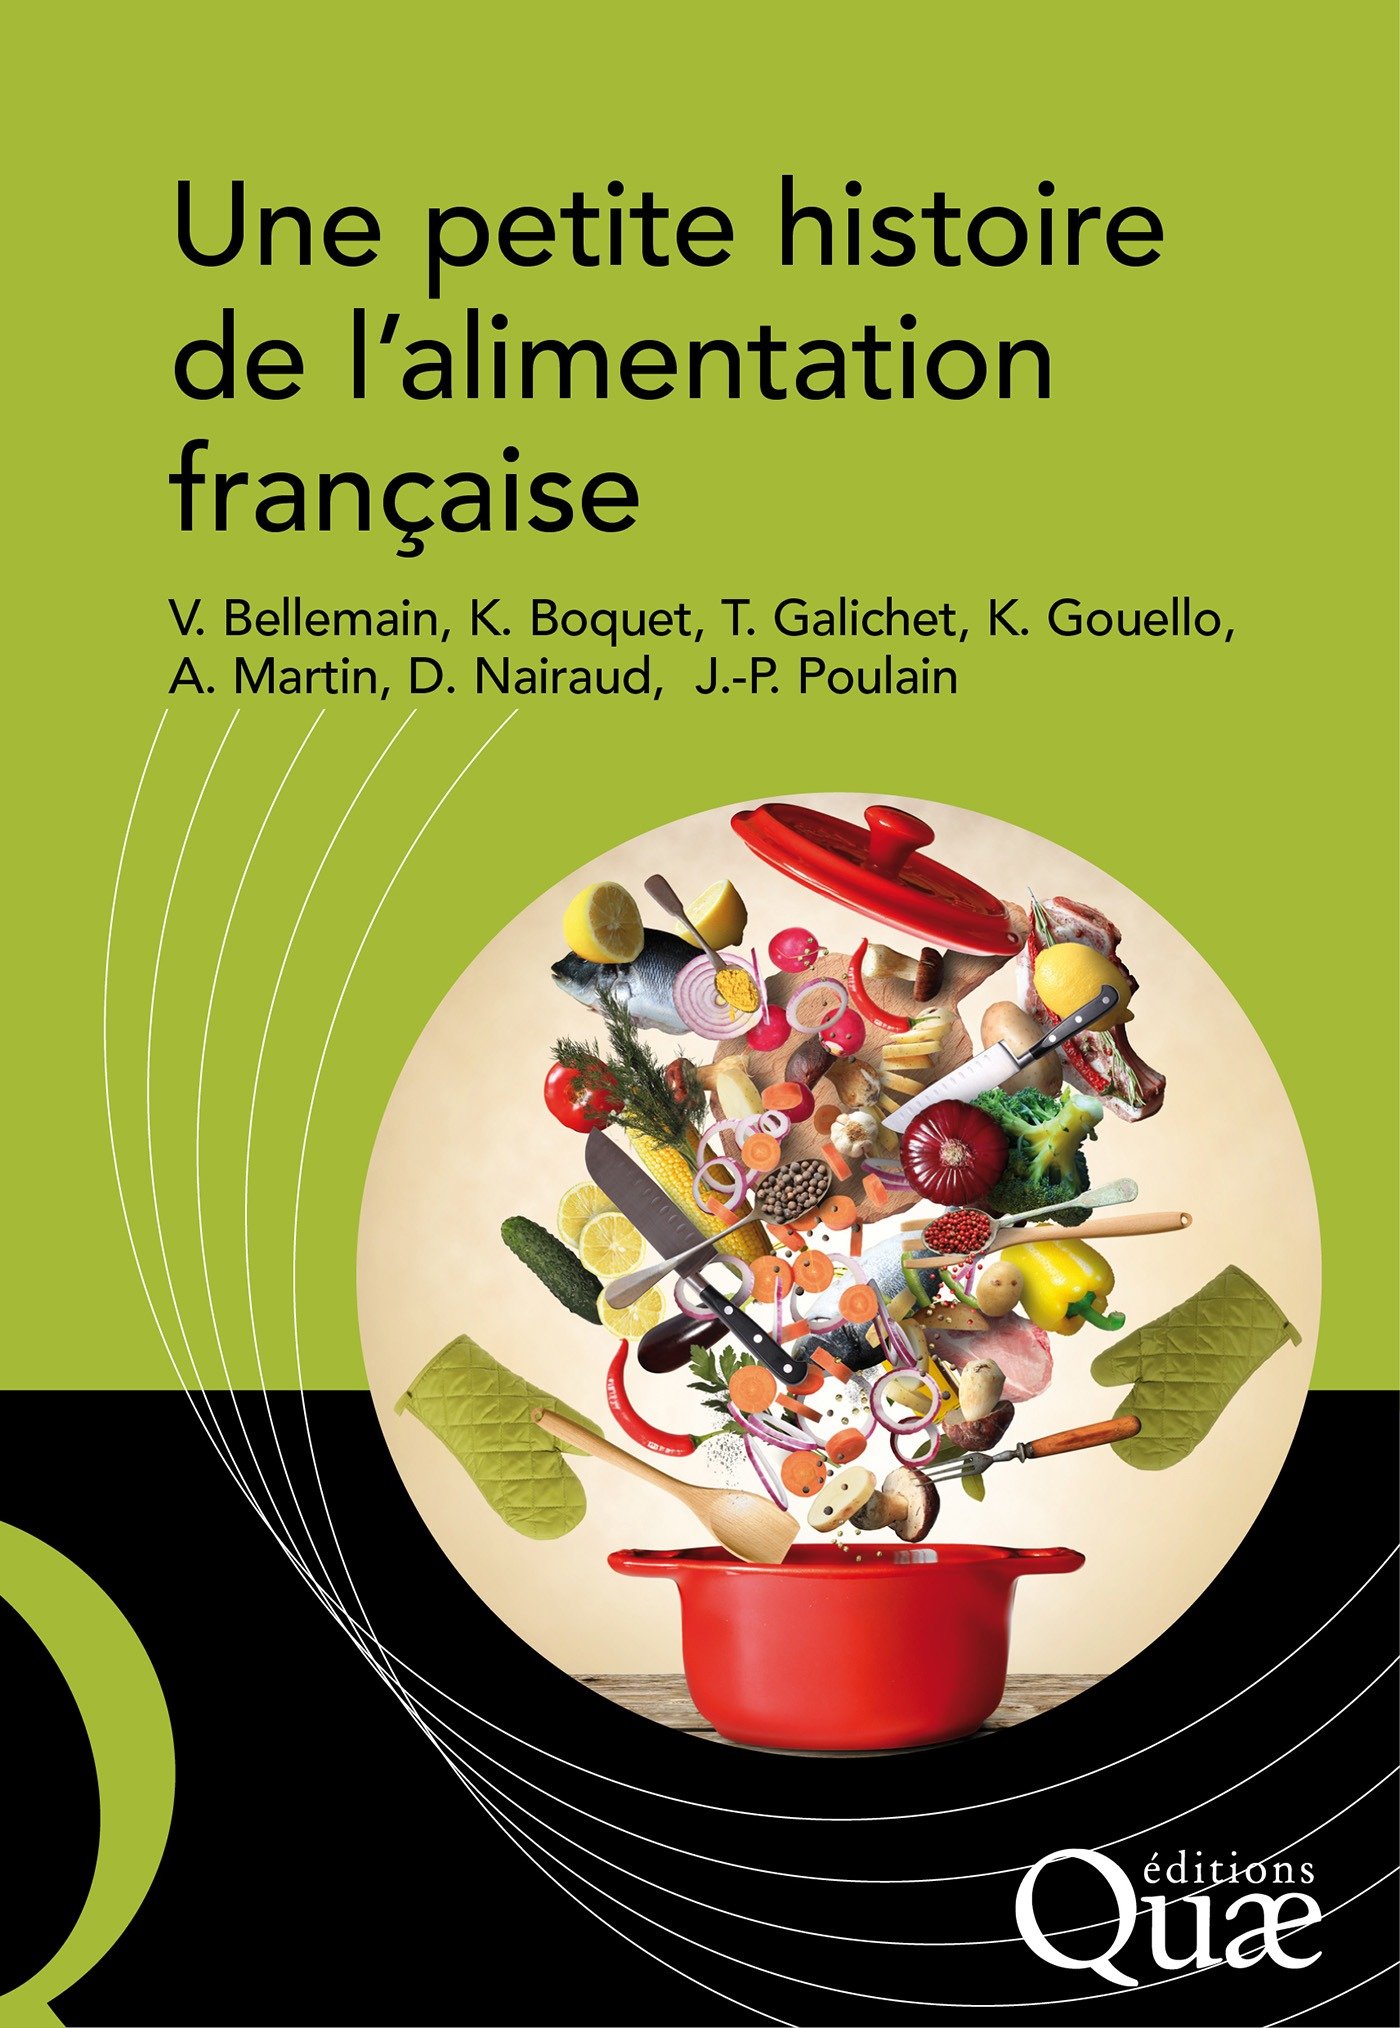 Une petite histoire de l'alimentation française (French Edition)